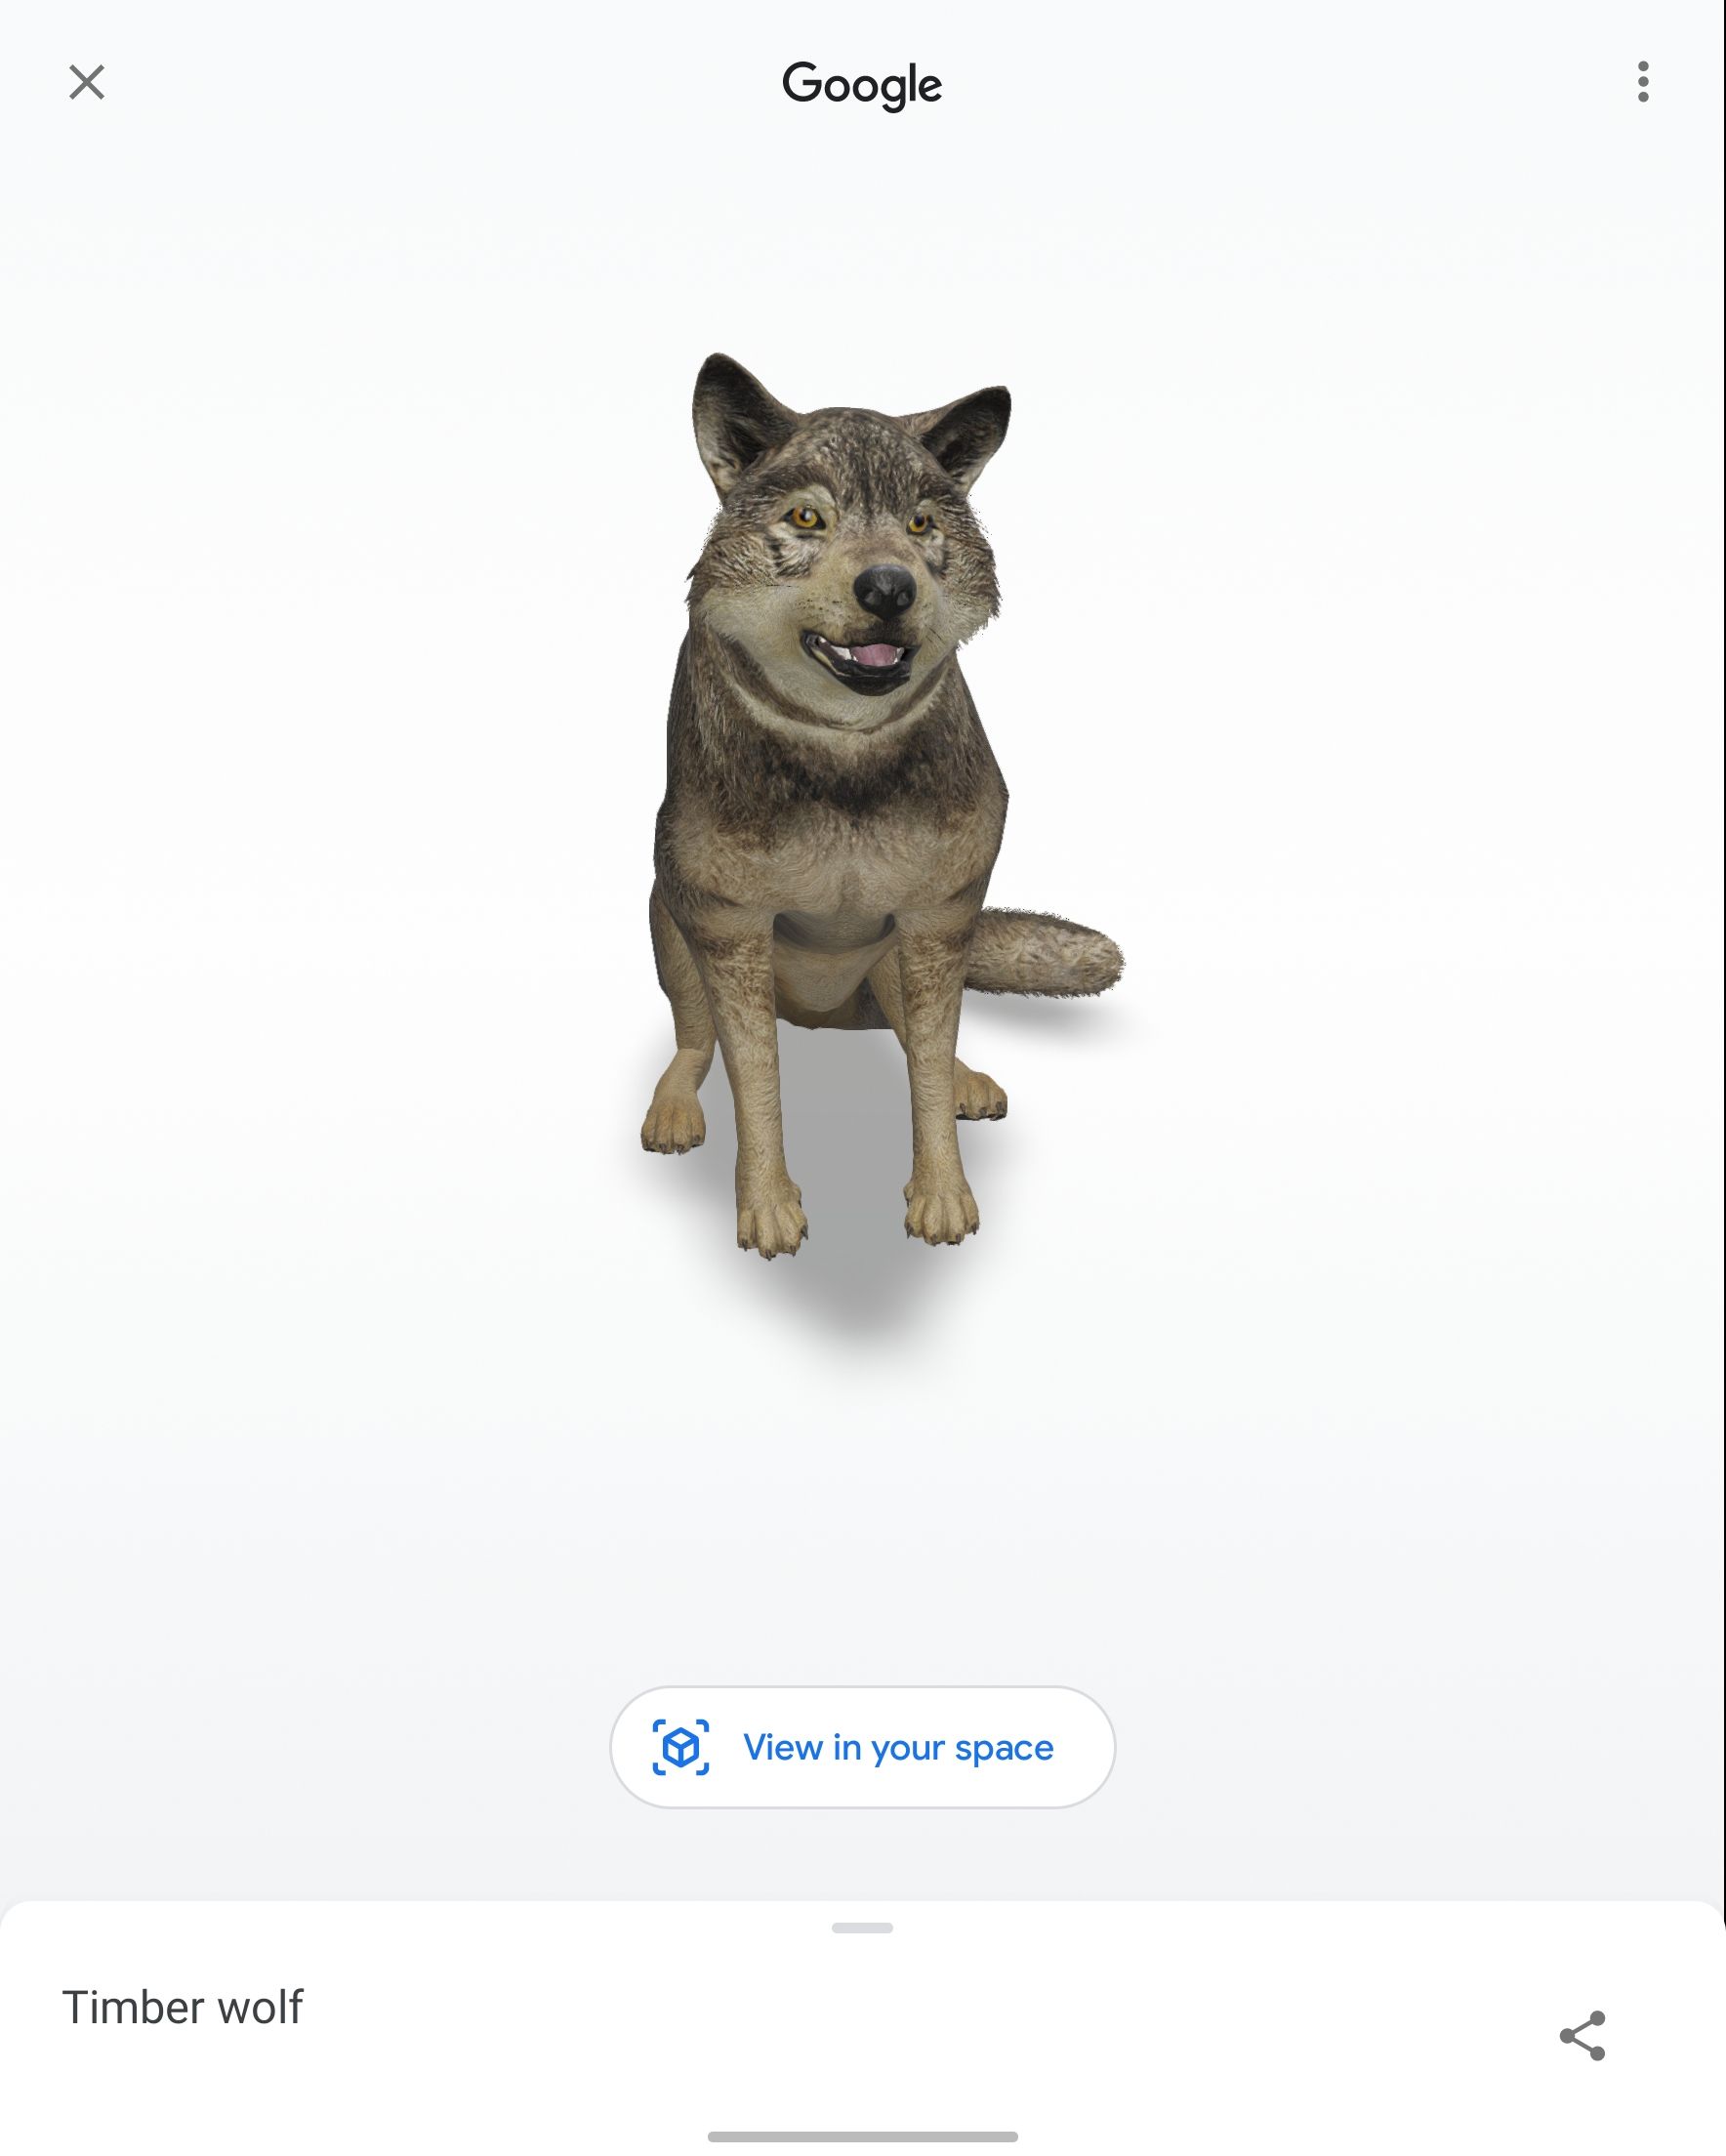 Captura de tela de um lobo AR gerado pelo Google